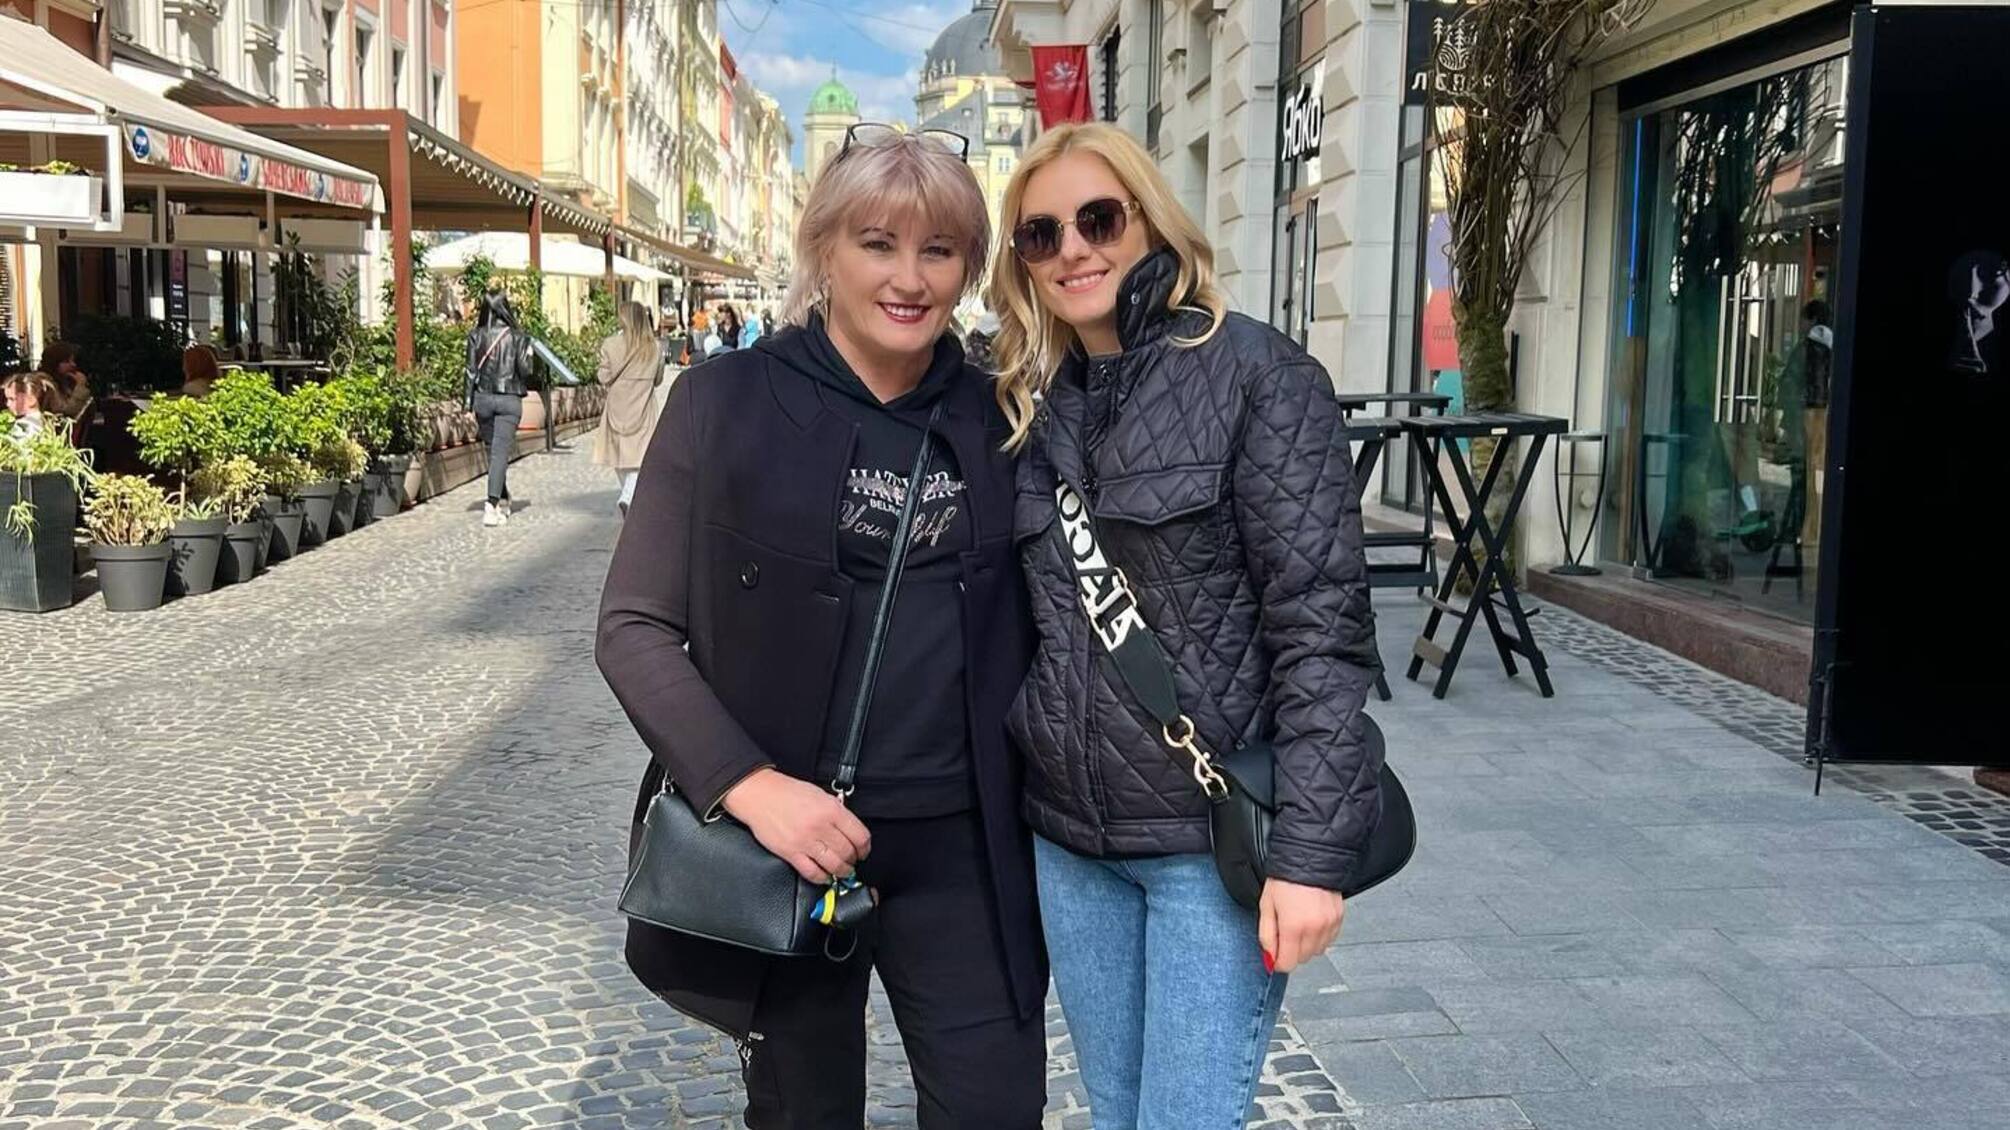 Ірина Федишин поділилася фотографією з мамою у Львові